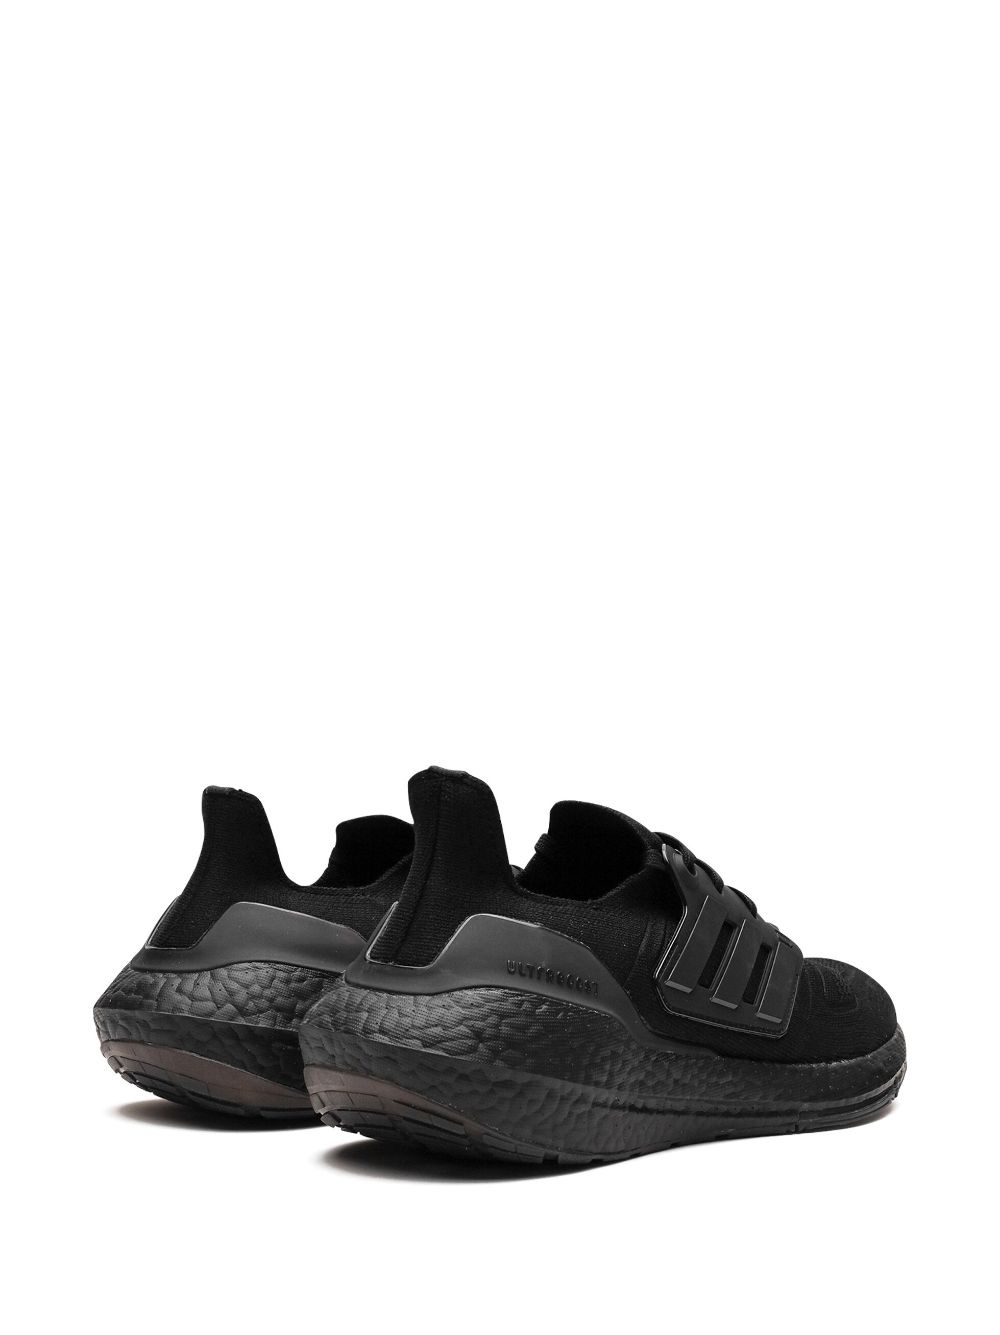 Ultraboost 22 "Triple Black" sneakers - 3